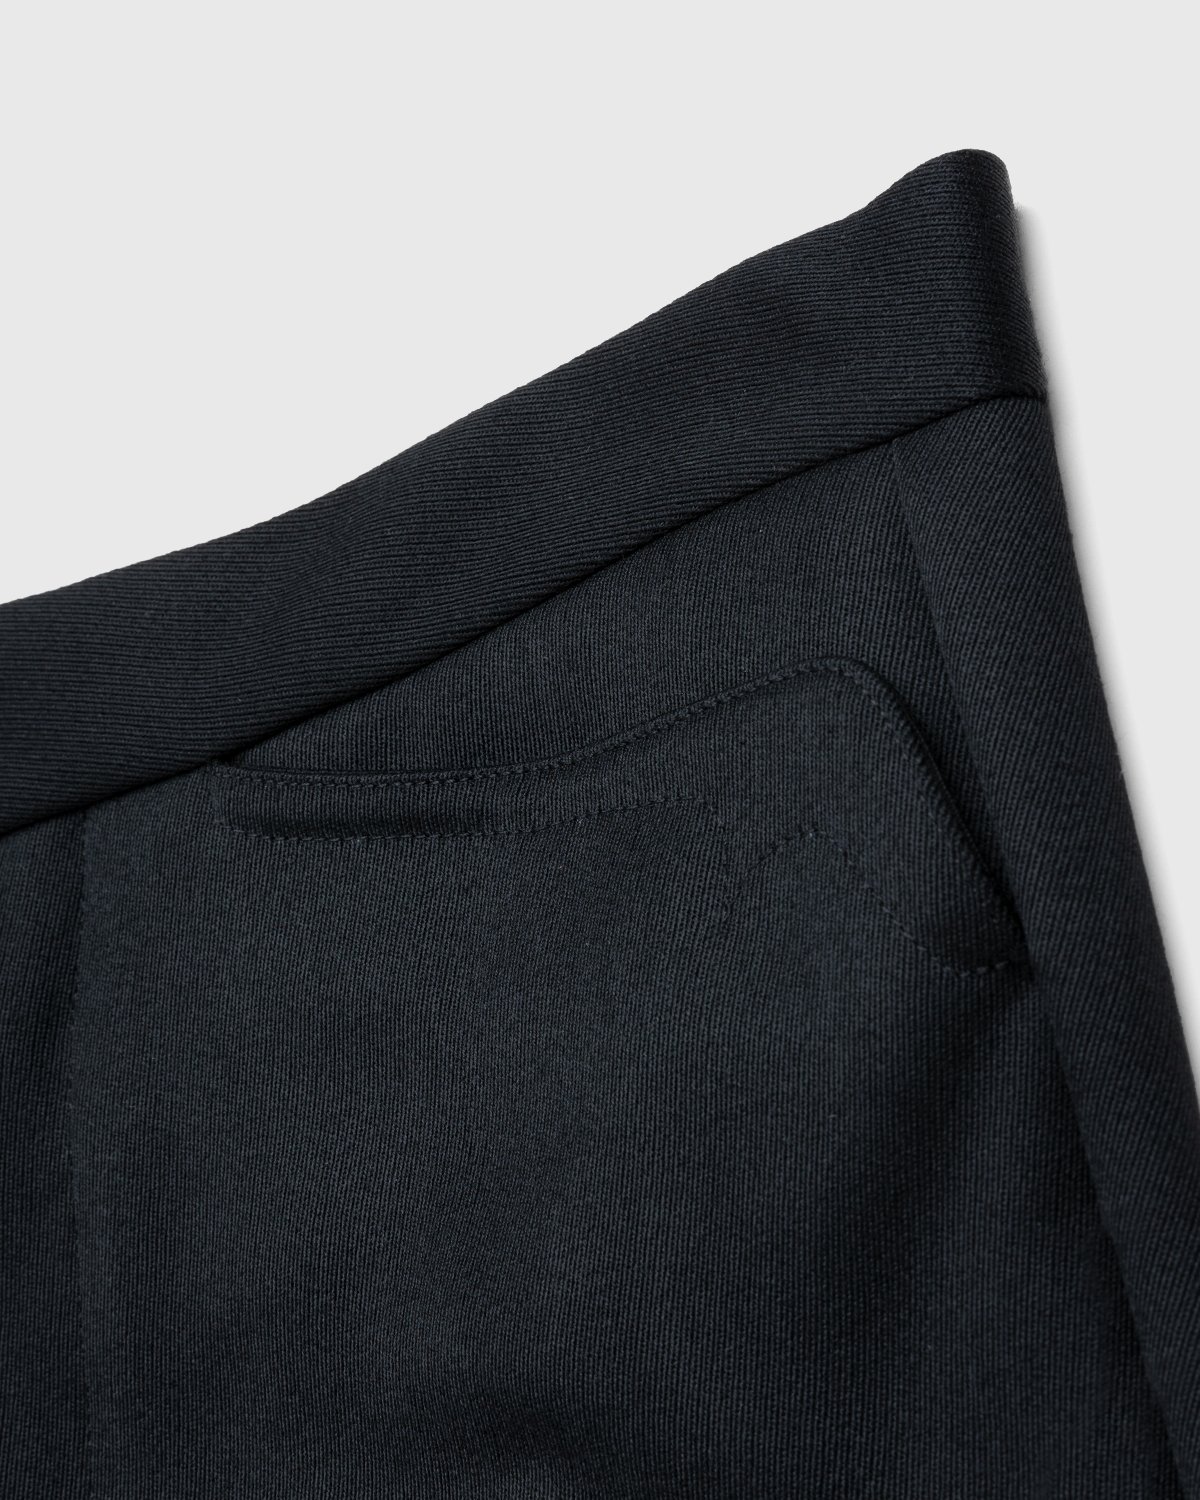 Maison Margiela - Gabardine Trousers Black - Clothing - Black - Image 5